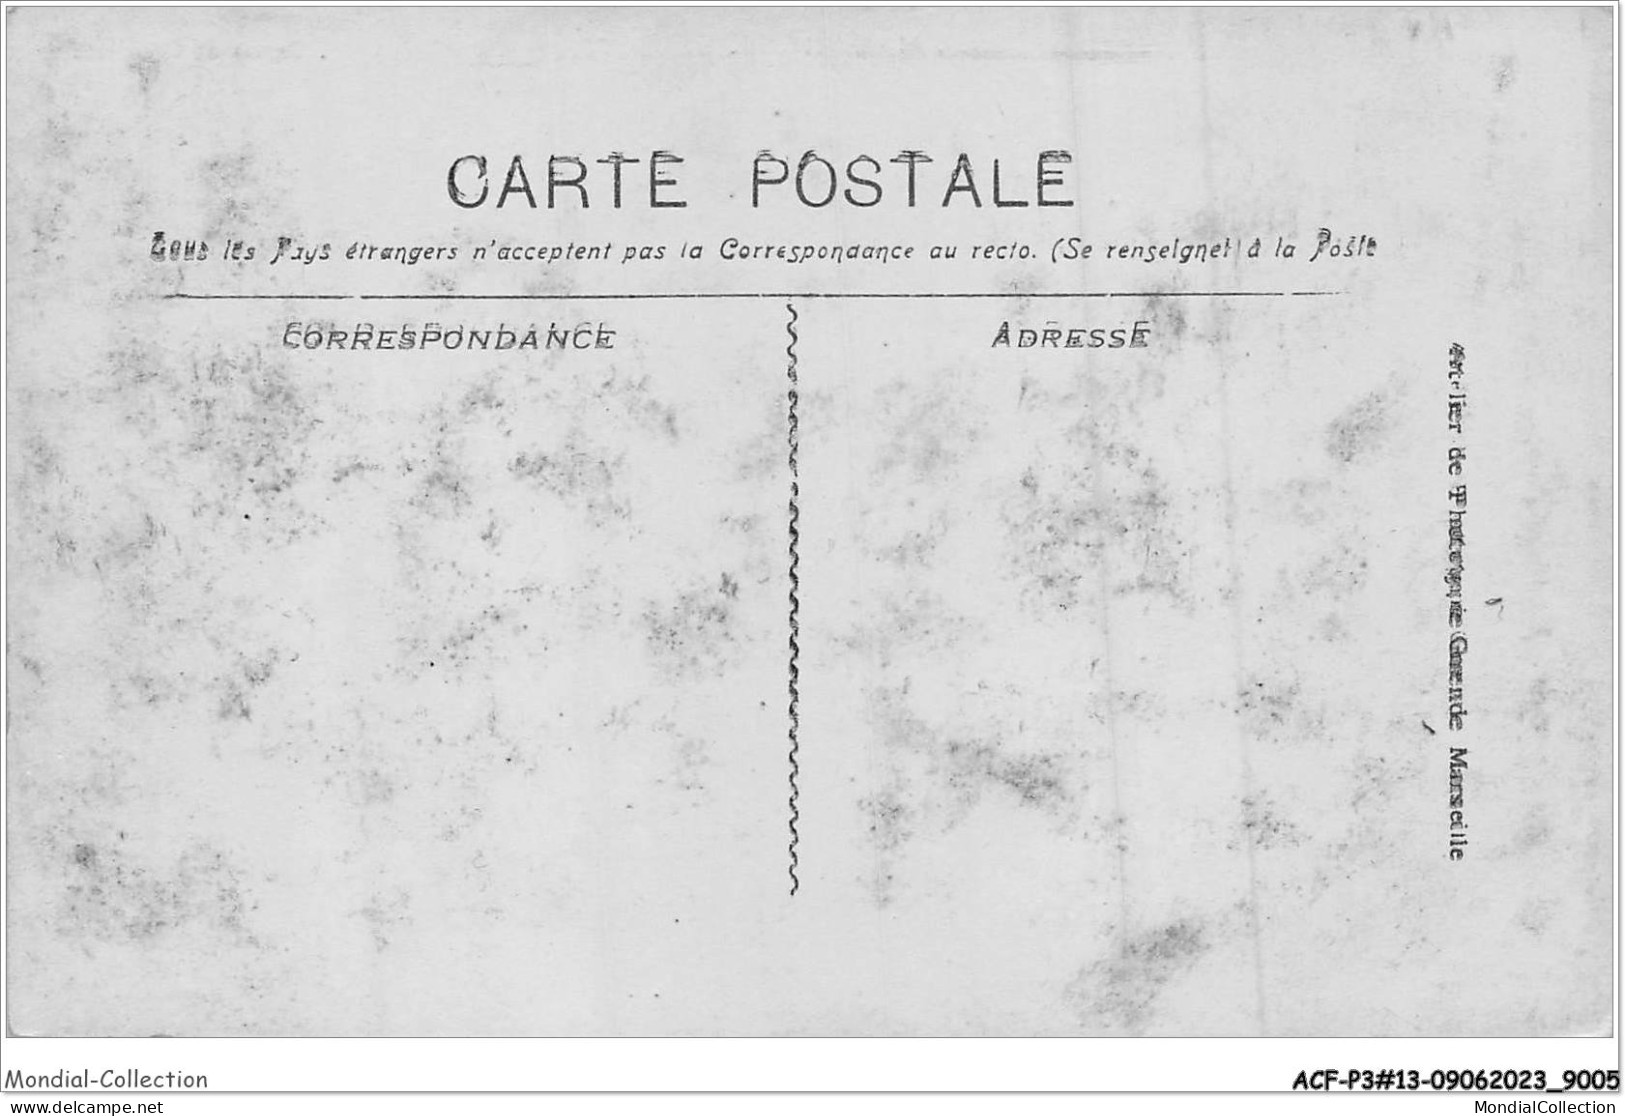 ACFP3-13-0219 - MARSEILLE - Palais De L'algerie  - Colonial Exhibitions 1906 - 1922